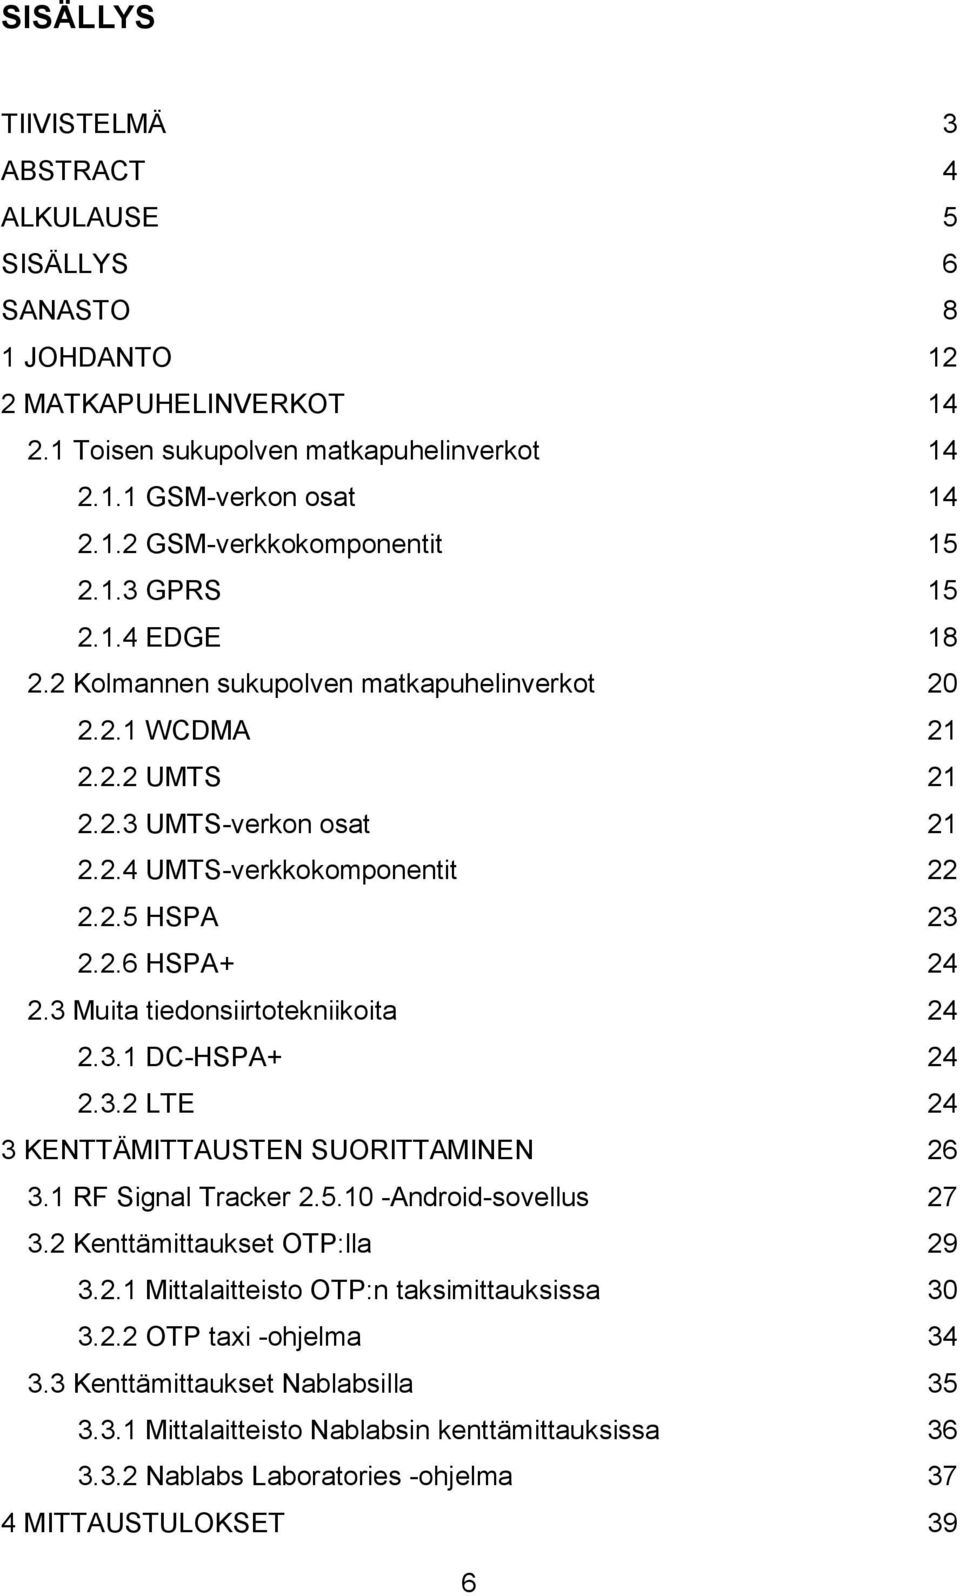 3 Muita tiedonsiirtotekniikoita 24 2.3.1 DC-HSPA+ 24 2.3.2 LTE 24 3 KENTTÄMITTAUSTEN SUORITTAMINEN 26 3.1 RF Signal Tracker 2.5.10 -Android-sovellus 27 3.2 Kenttämittaukset OTP:lla 29 3.2.1 Mittalaitteisto OTP:n taksimittauksissa 30 3.